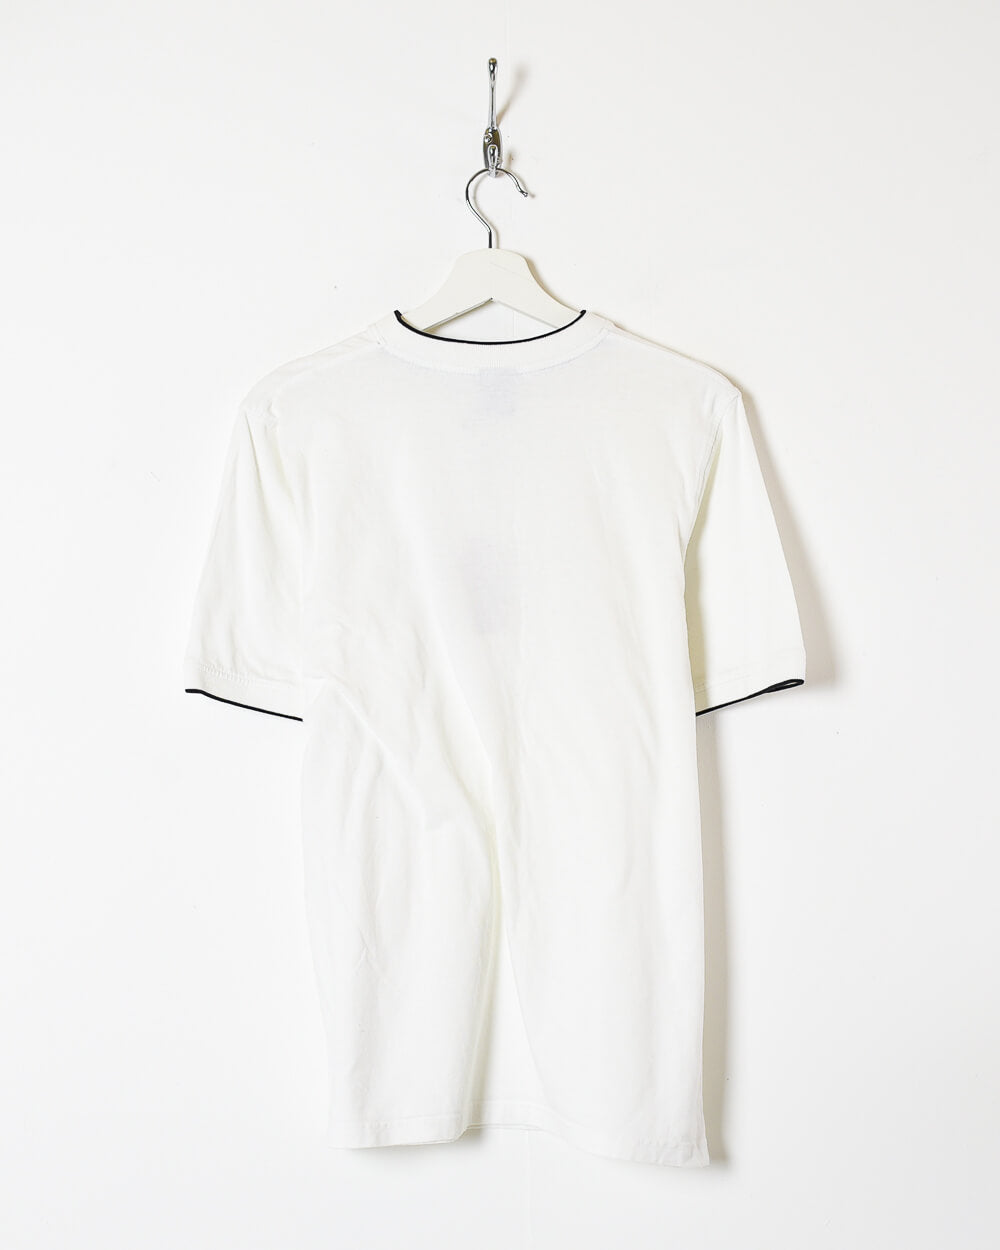 White Nike T-Shirt - Medium